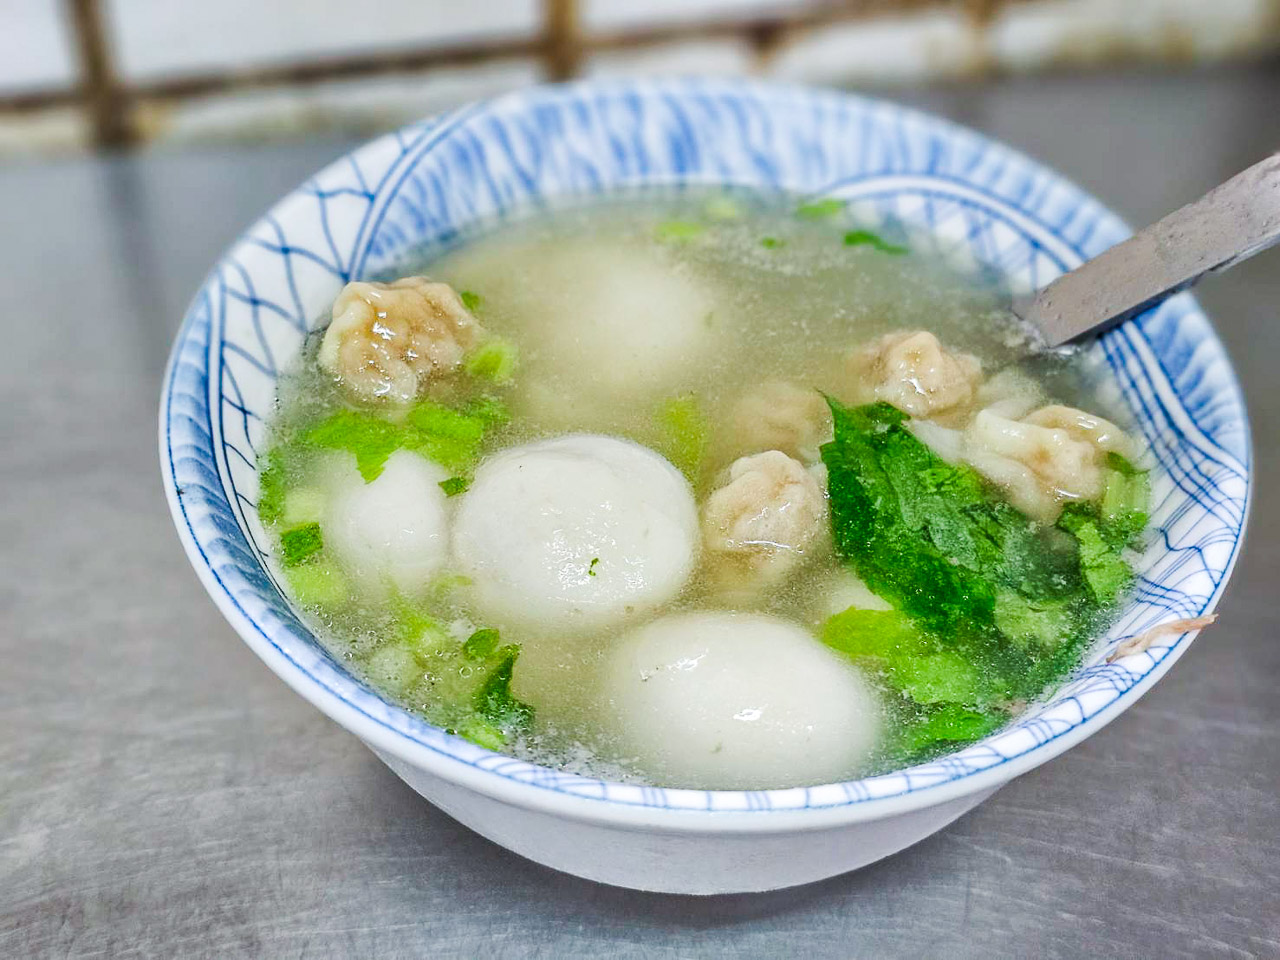 新竹美食,中央市場糯米水餃